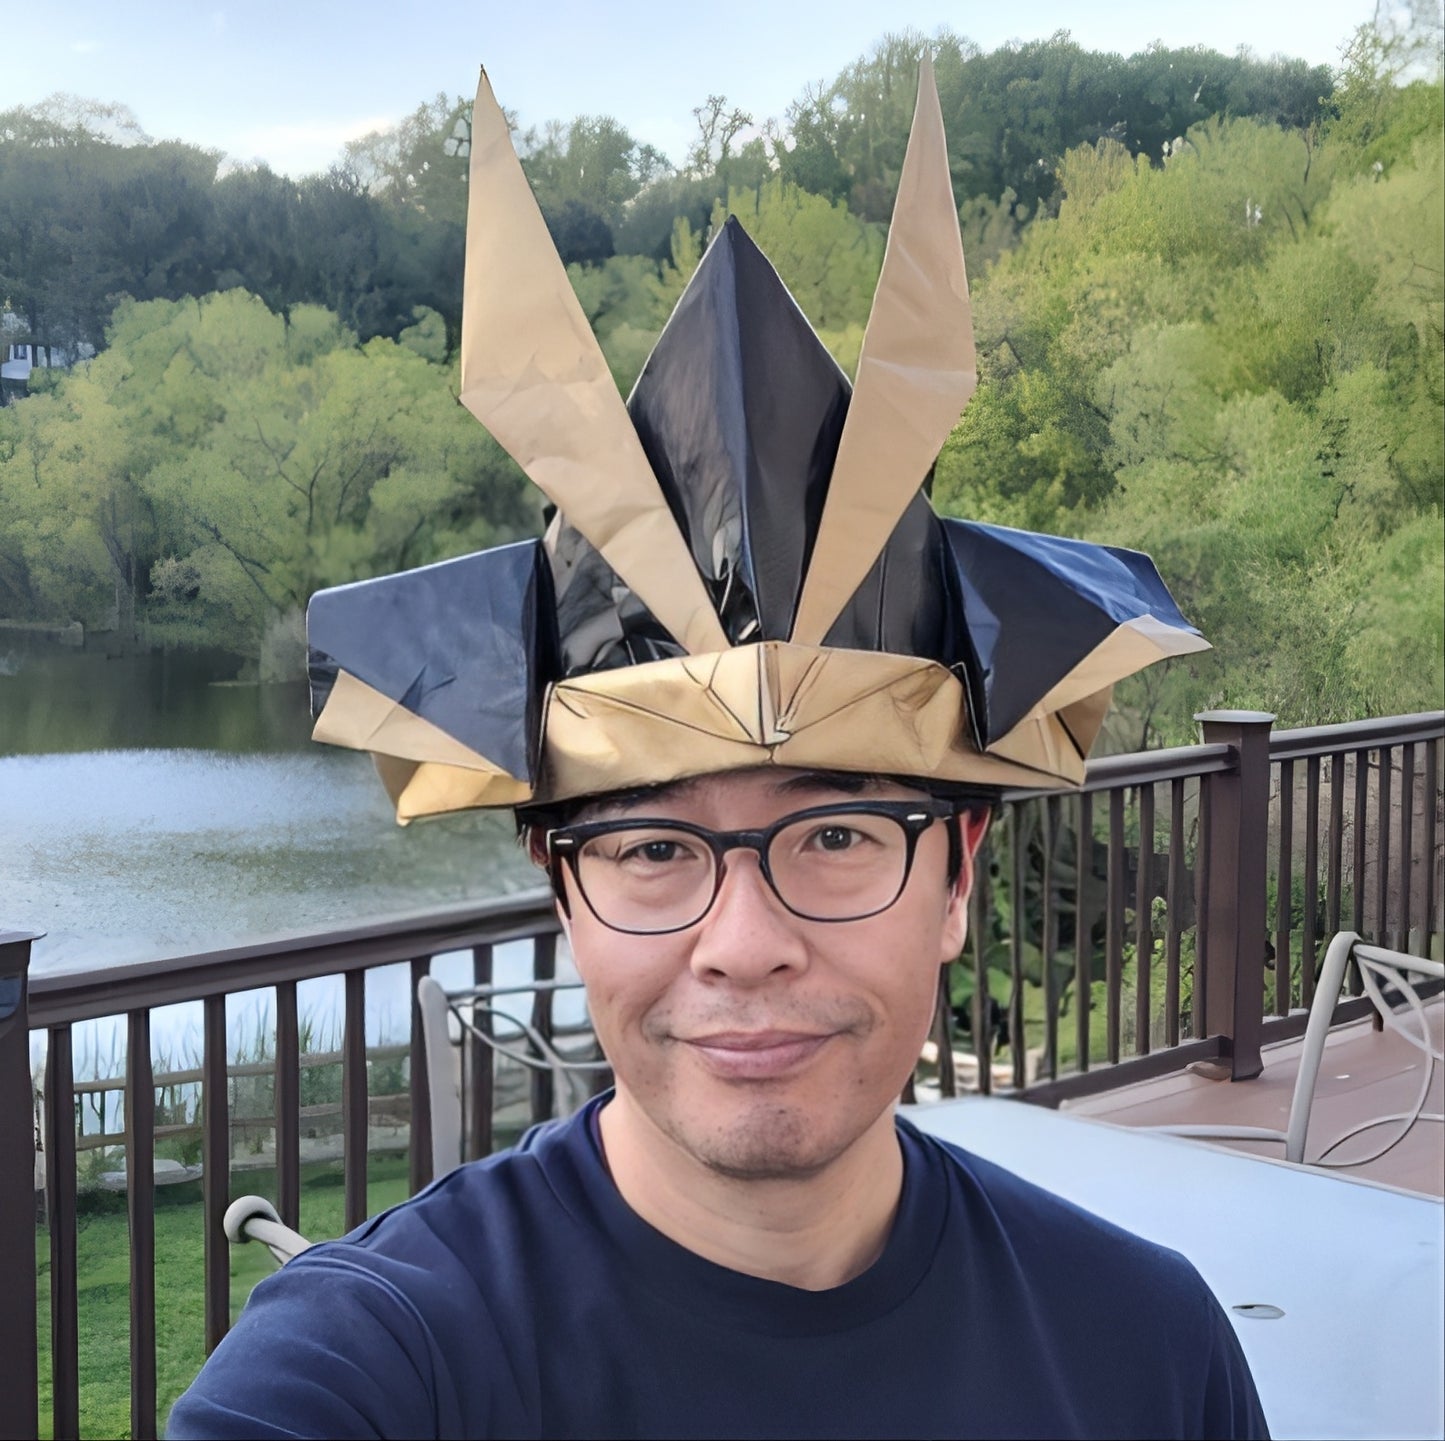 Completed Origami Samurai Helmet